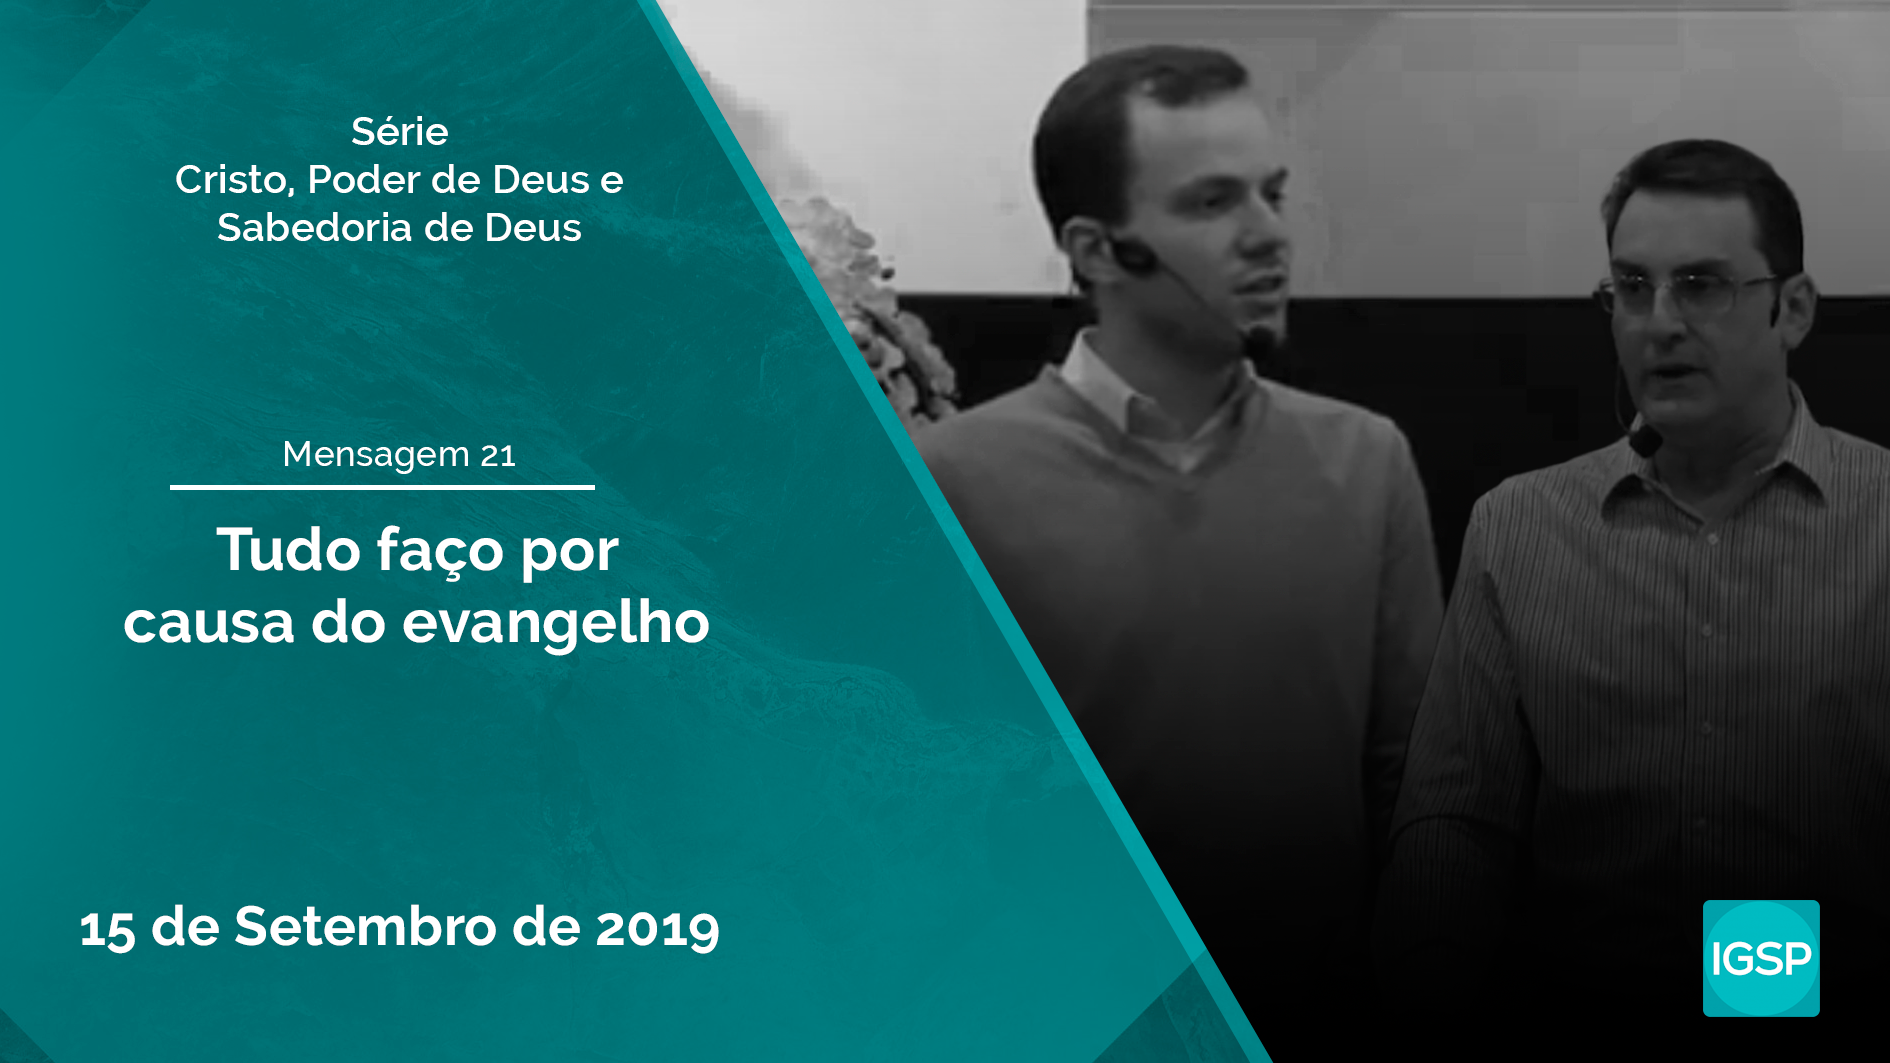 Read more about the article Tudo faço por causa do evangelho